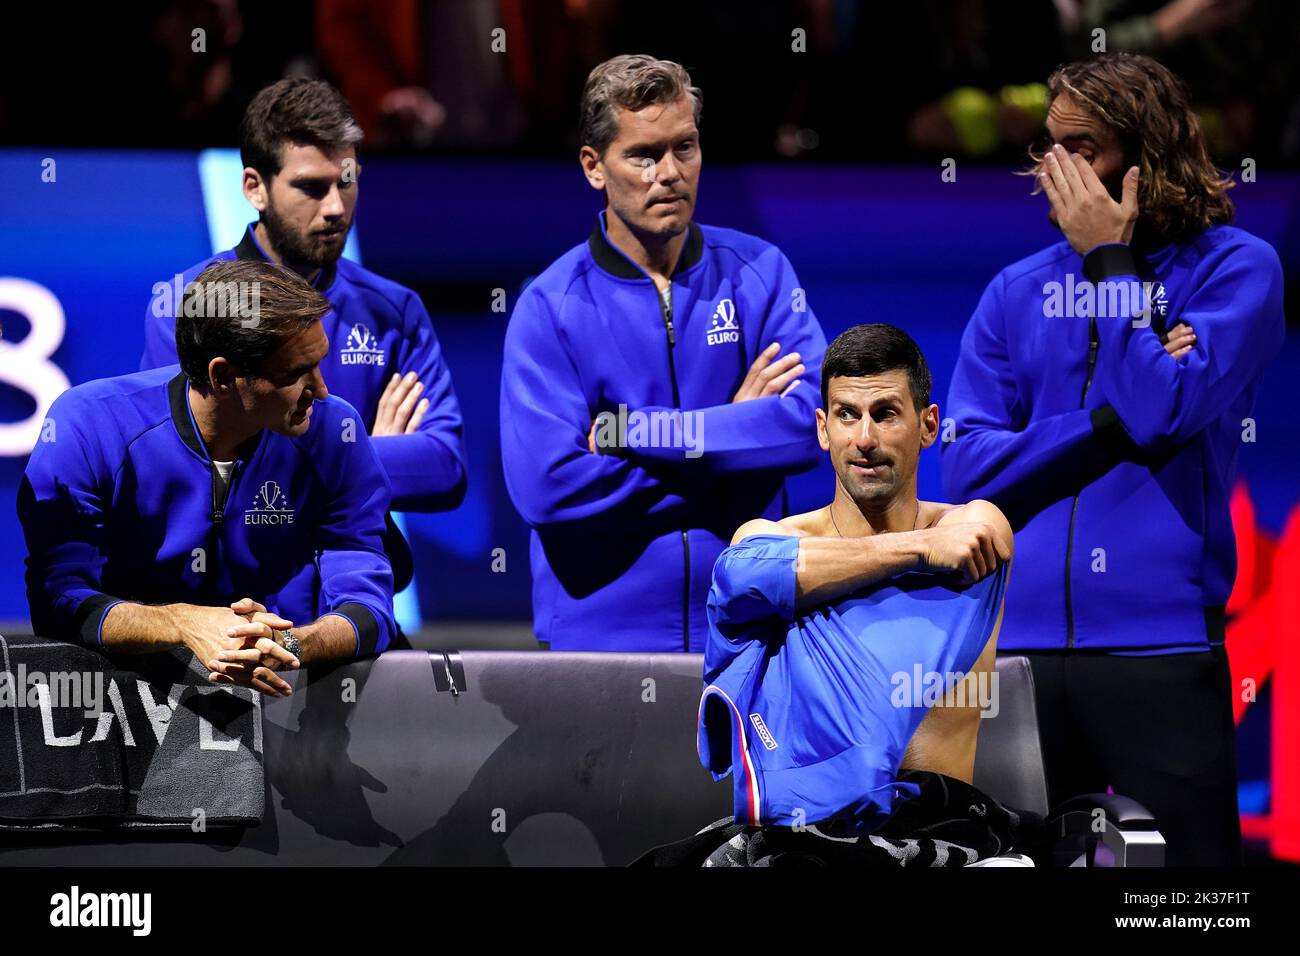 Novak Djokovic parle avec Roger Federer (à gauche) lors d'une pause dans le match des singles avec Felix Auger Aliassime (non représenté) le troisième jour de la coupe Laver à l'Arena O2, Londres. Date de la photo: Dimanche 25 septembre 2022. Banque D'Images